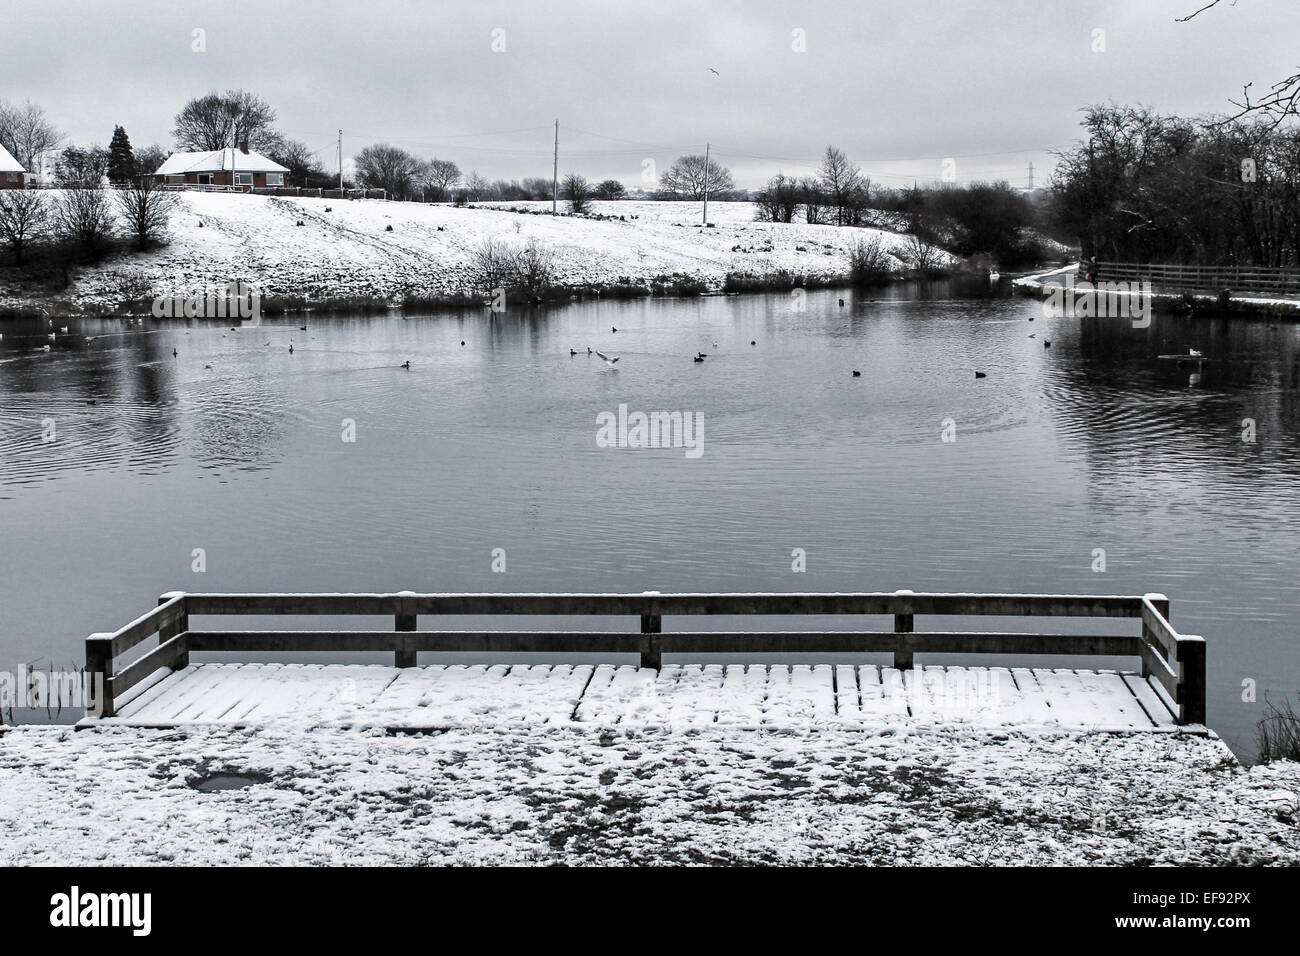 Winter at Daisy Nook. Stock Photo